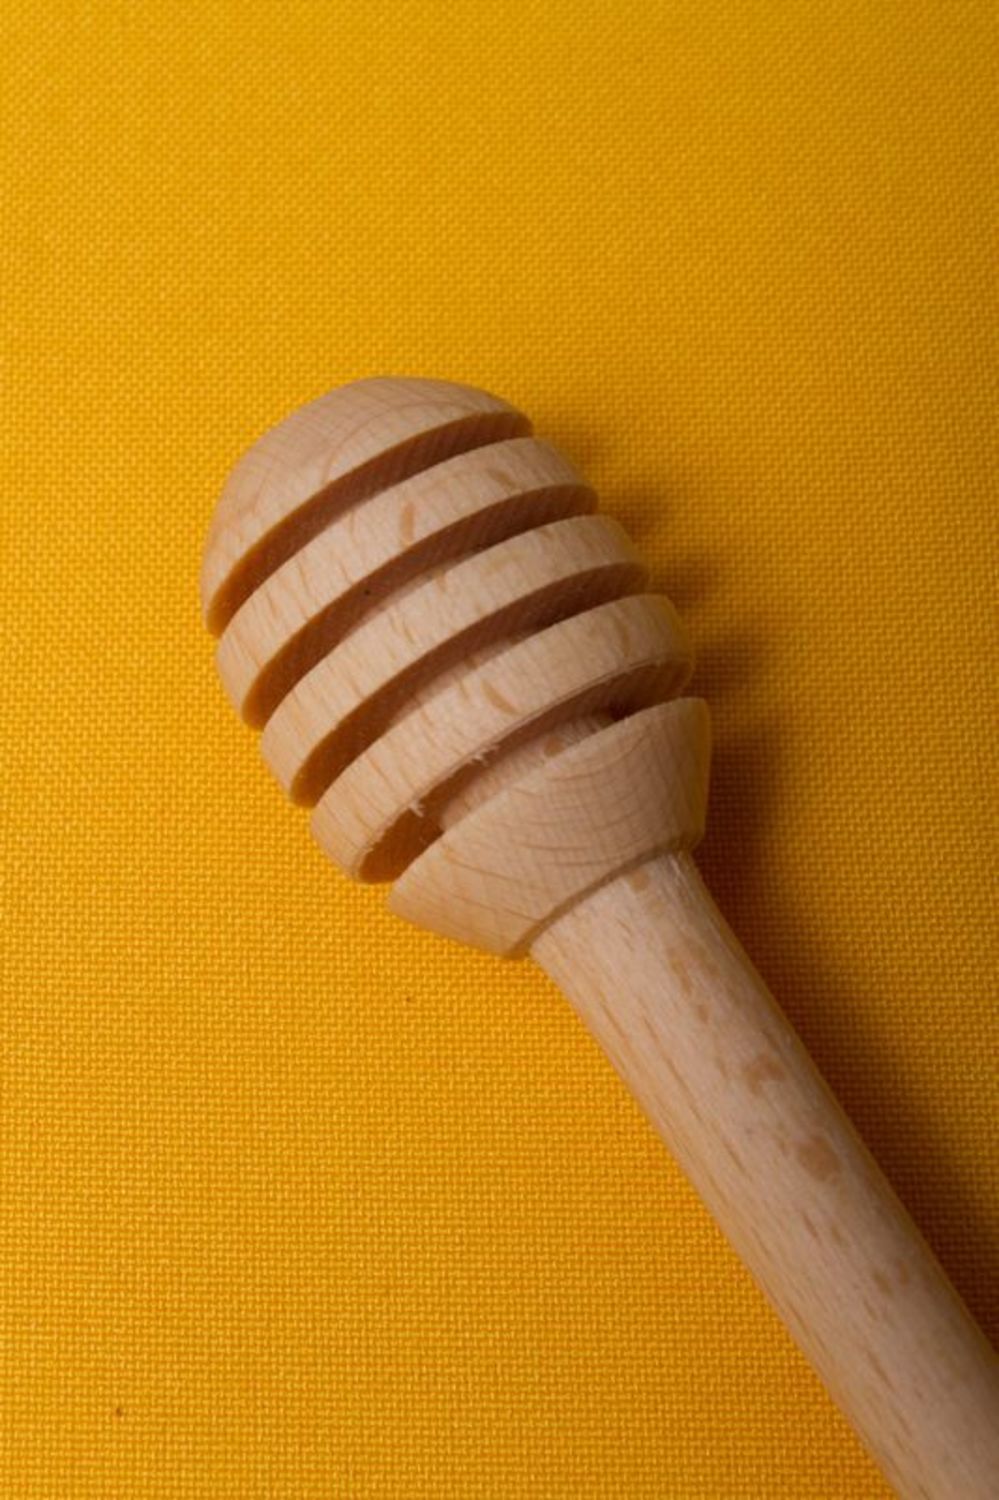 Wooden honey dripper photo 5